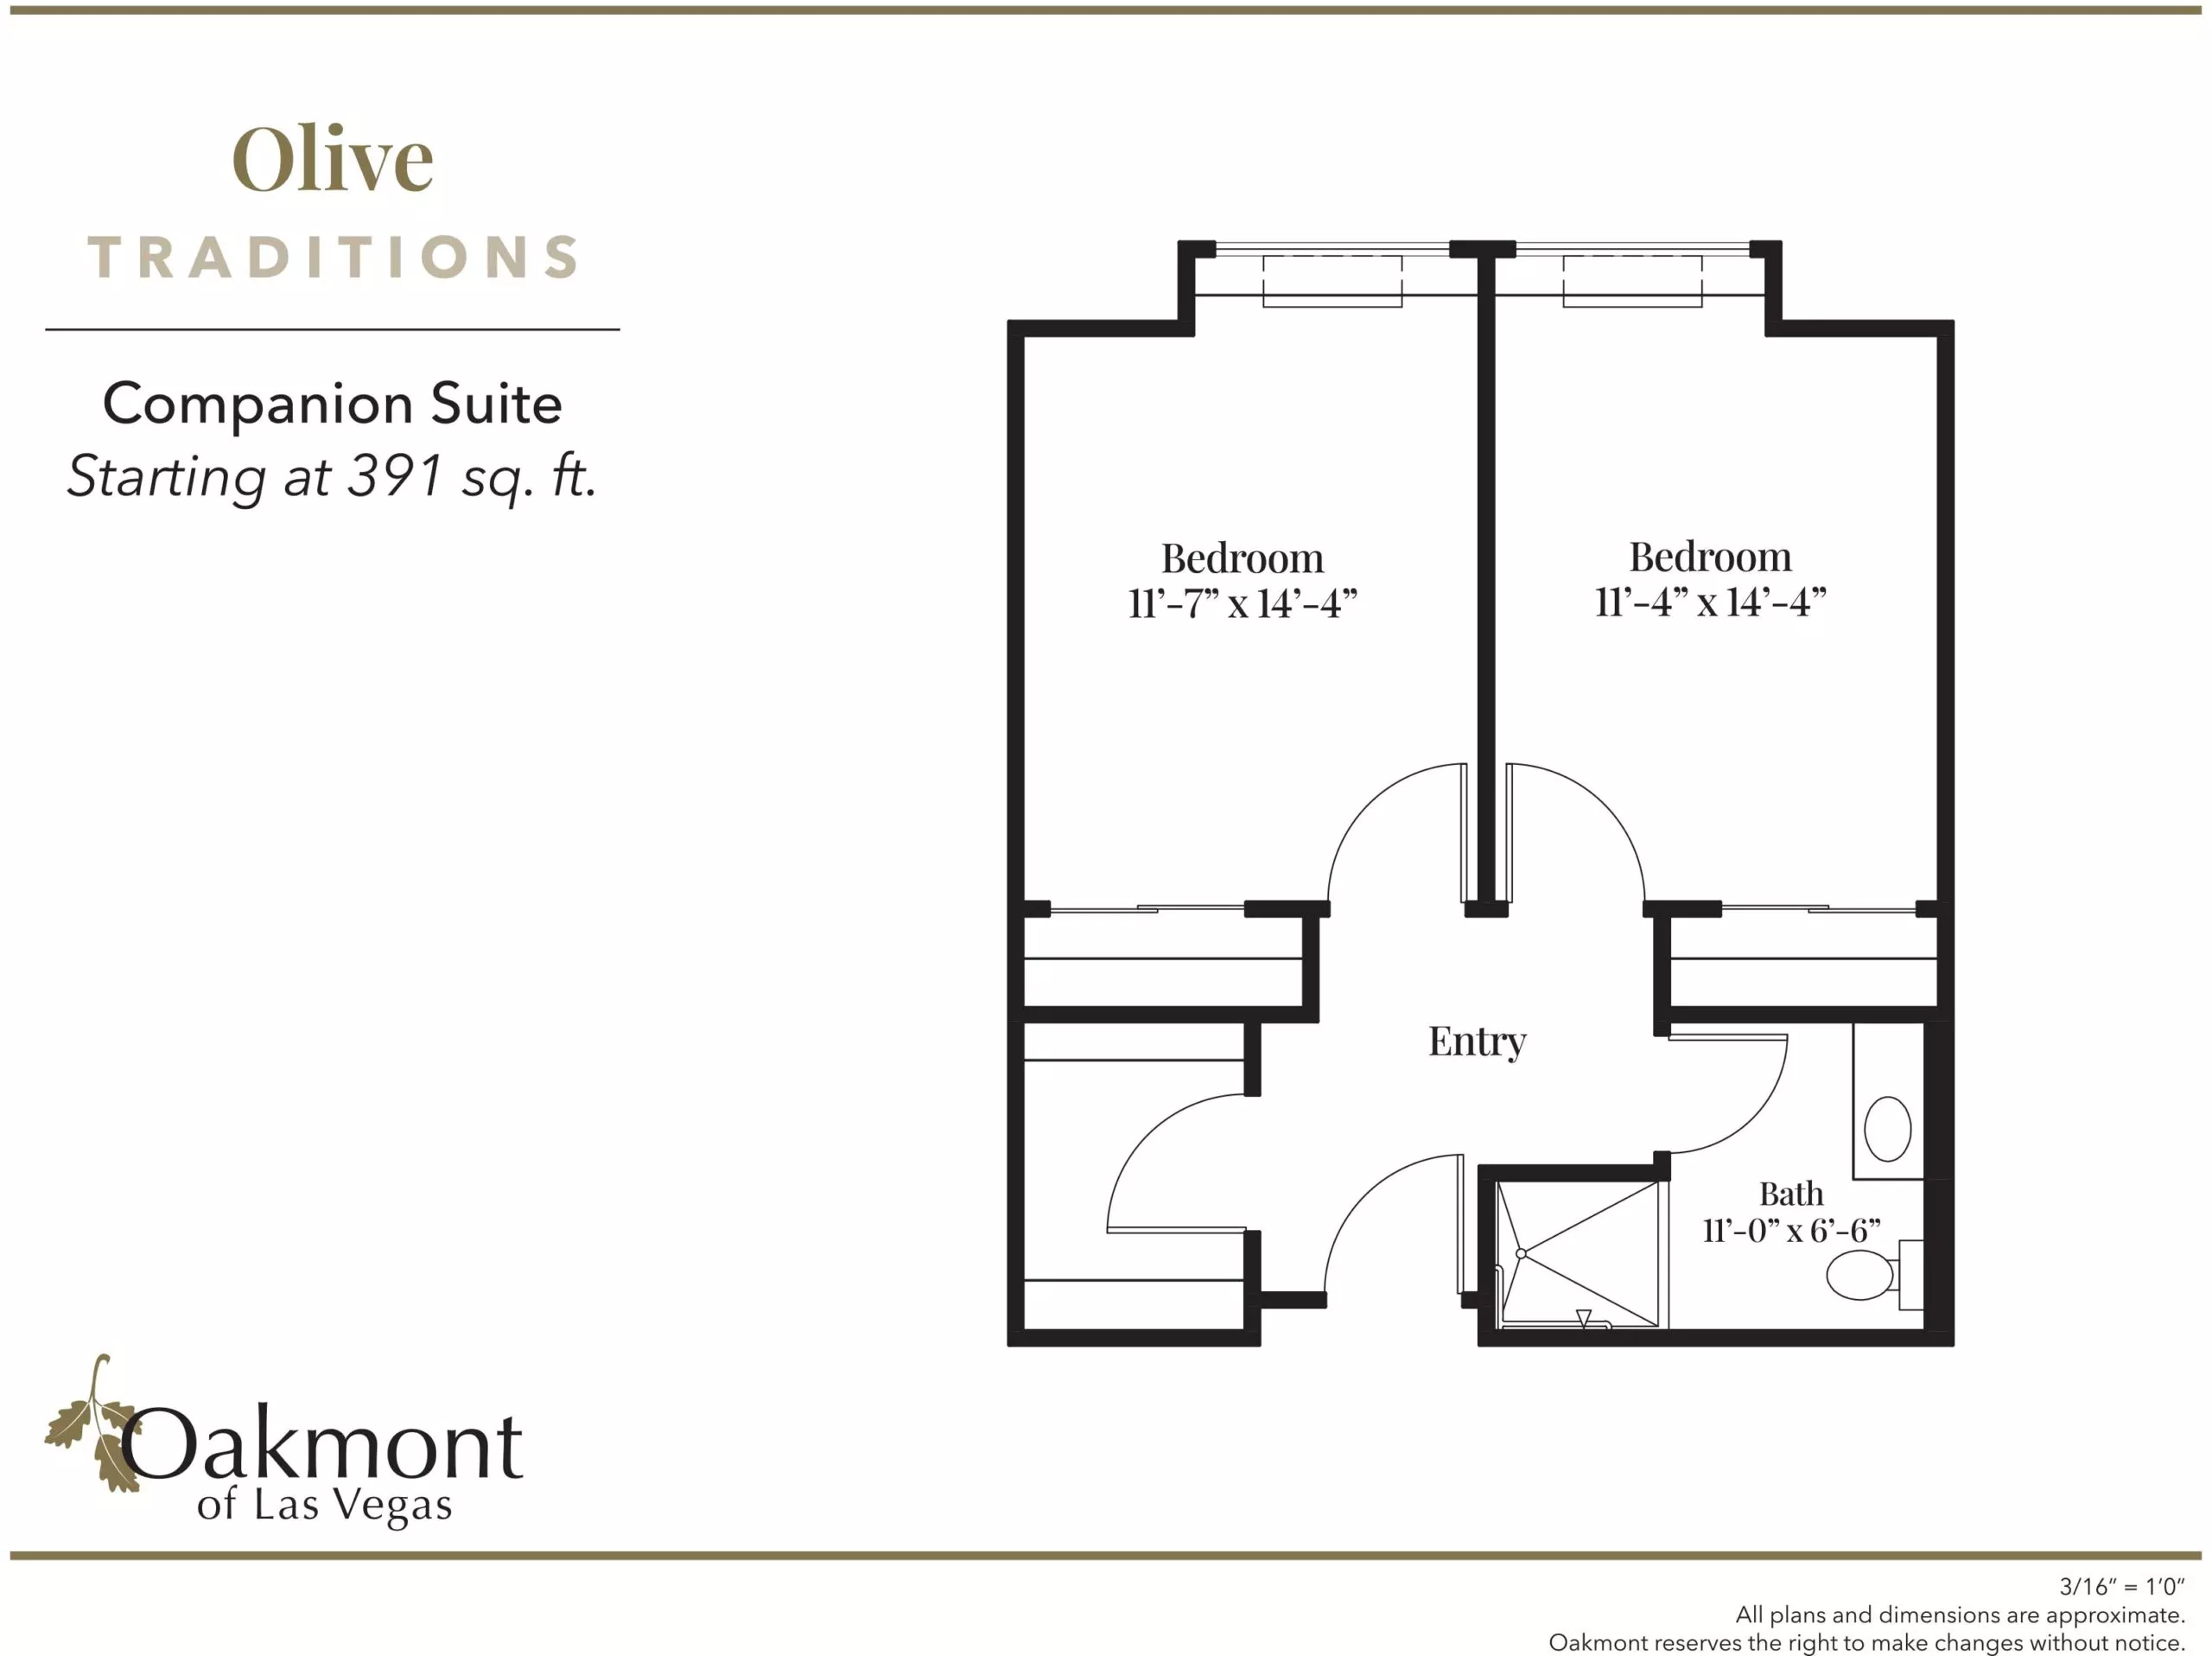 Olive companion suite floor plan